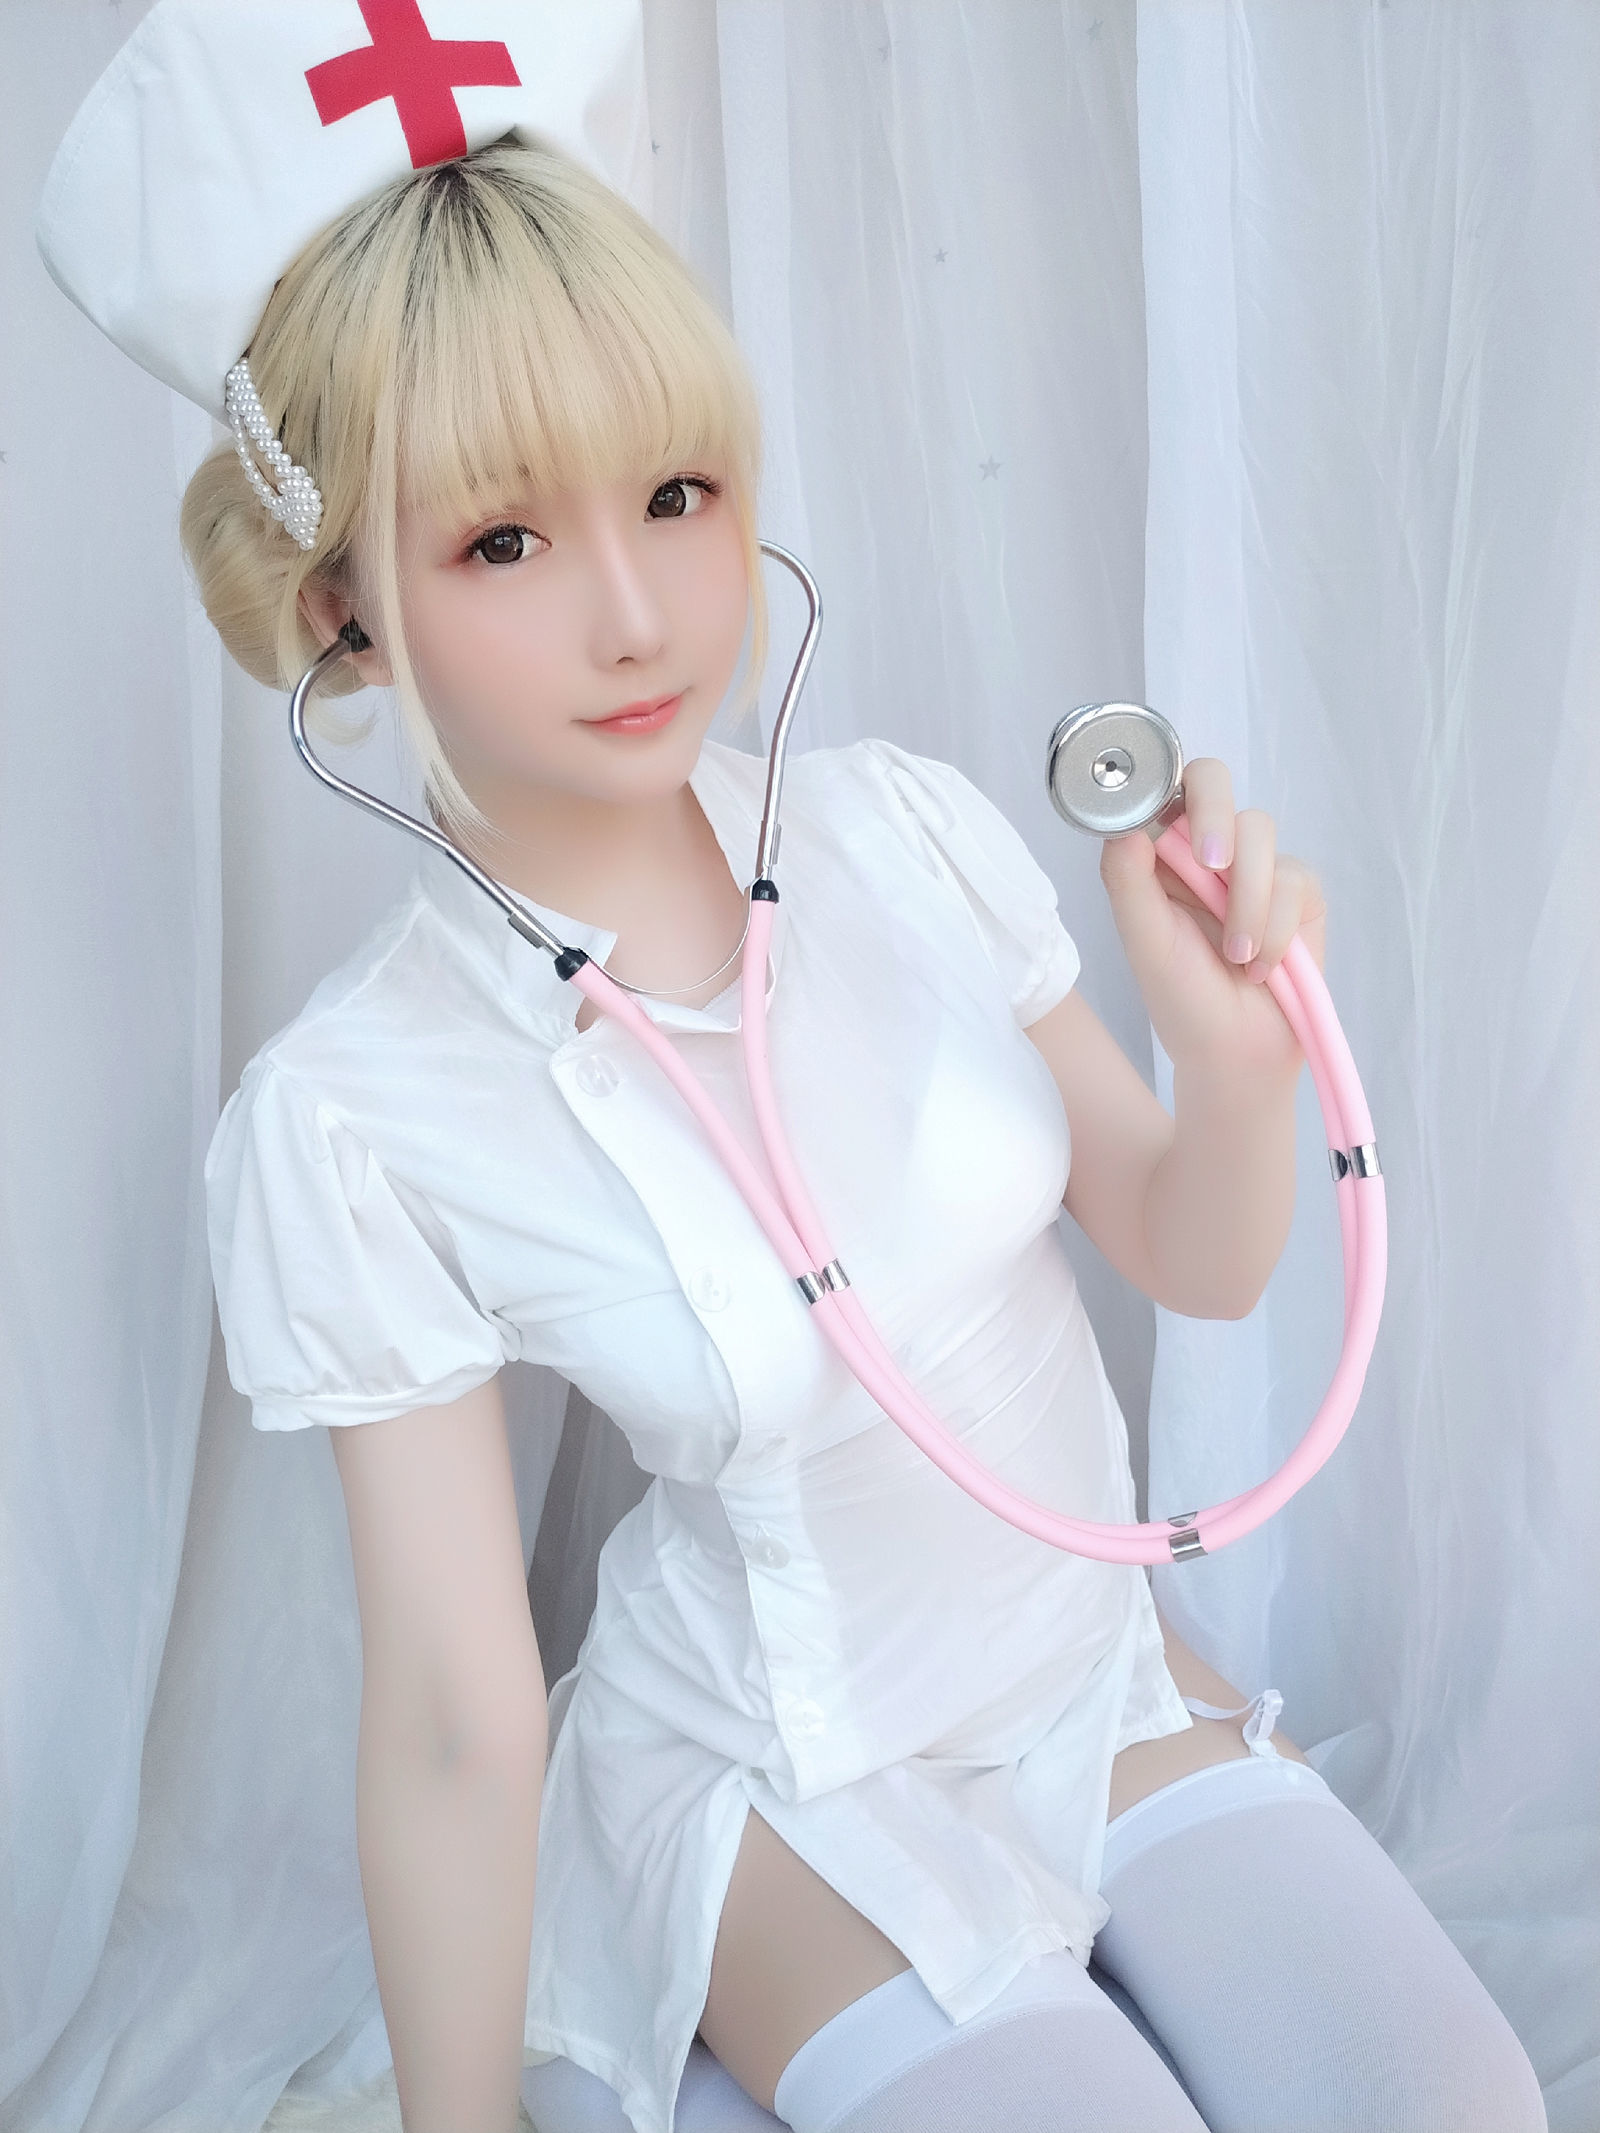 Goth nurse